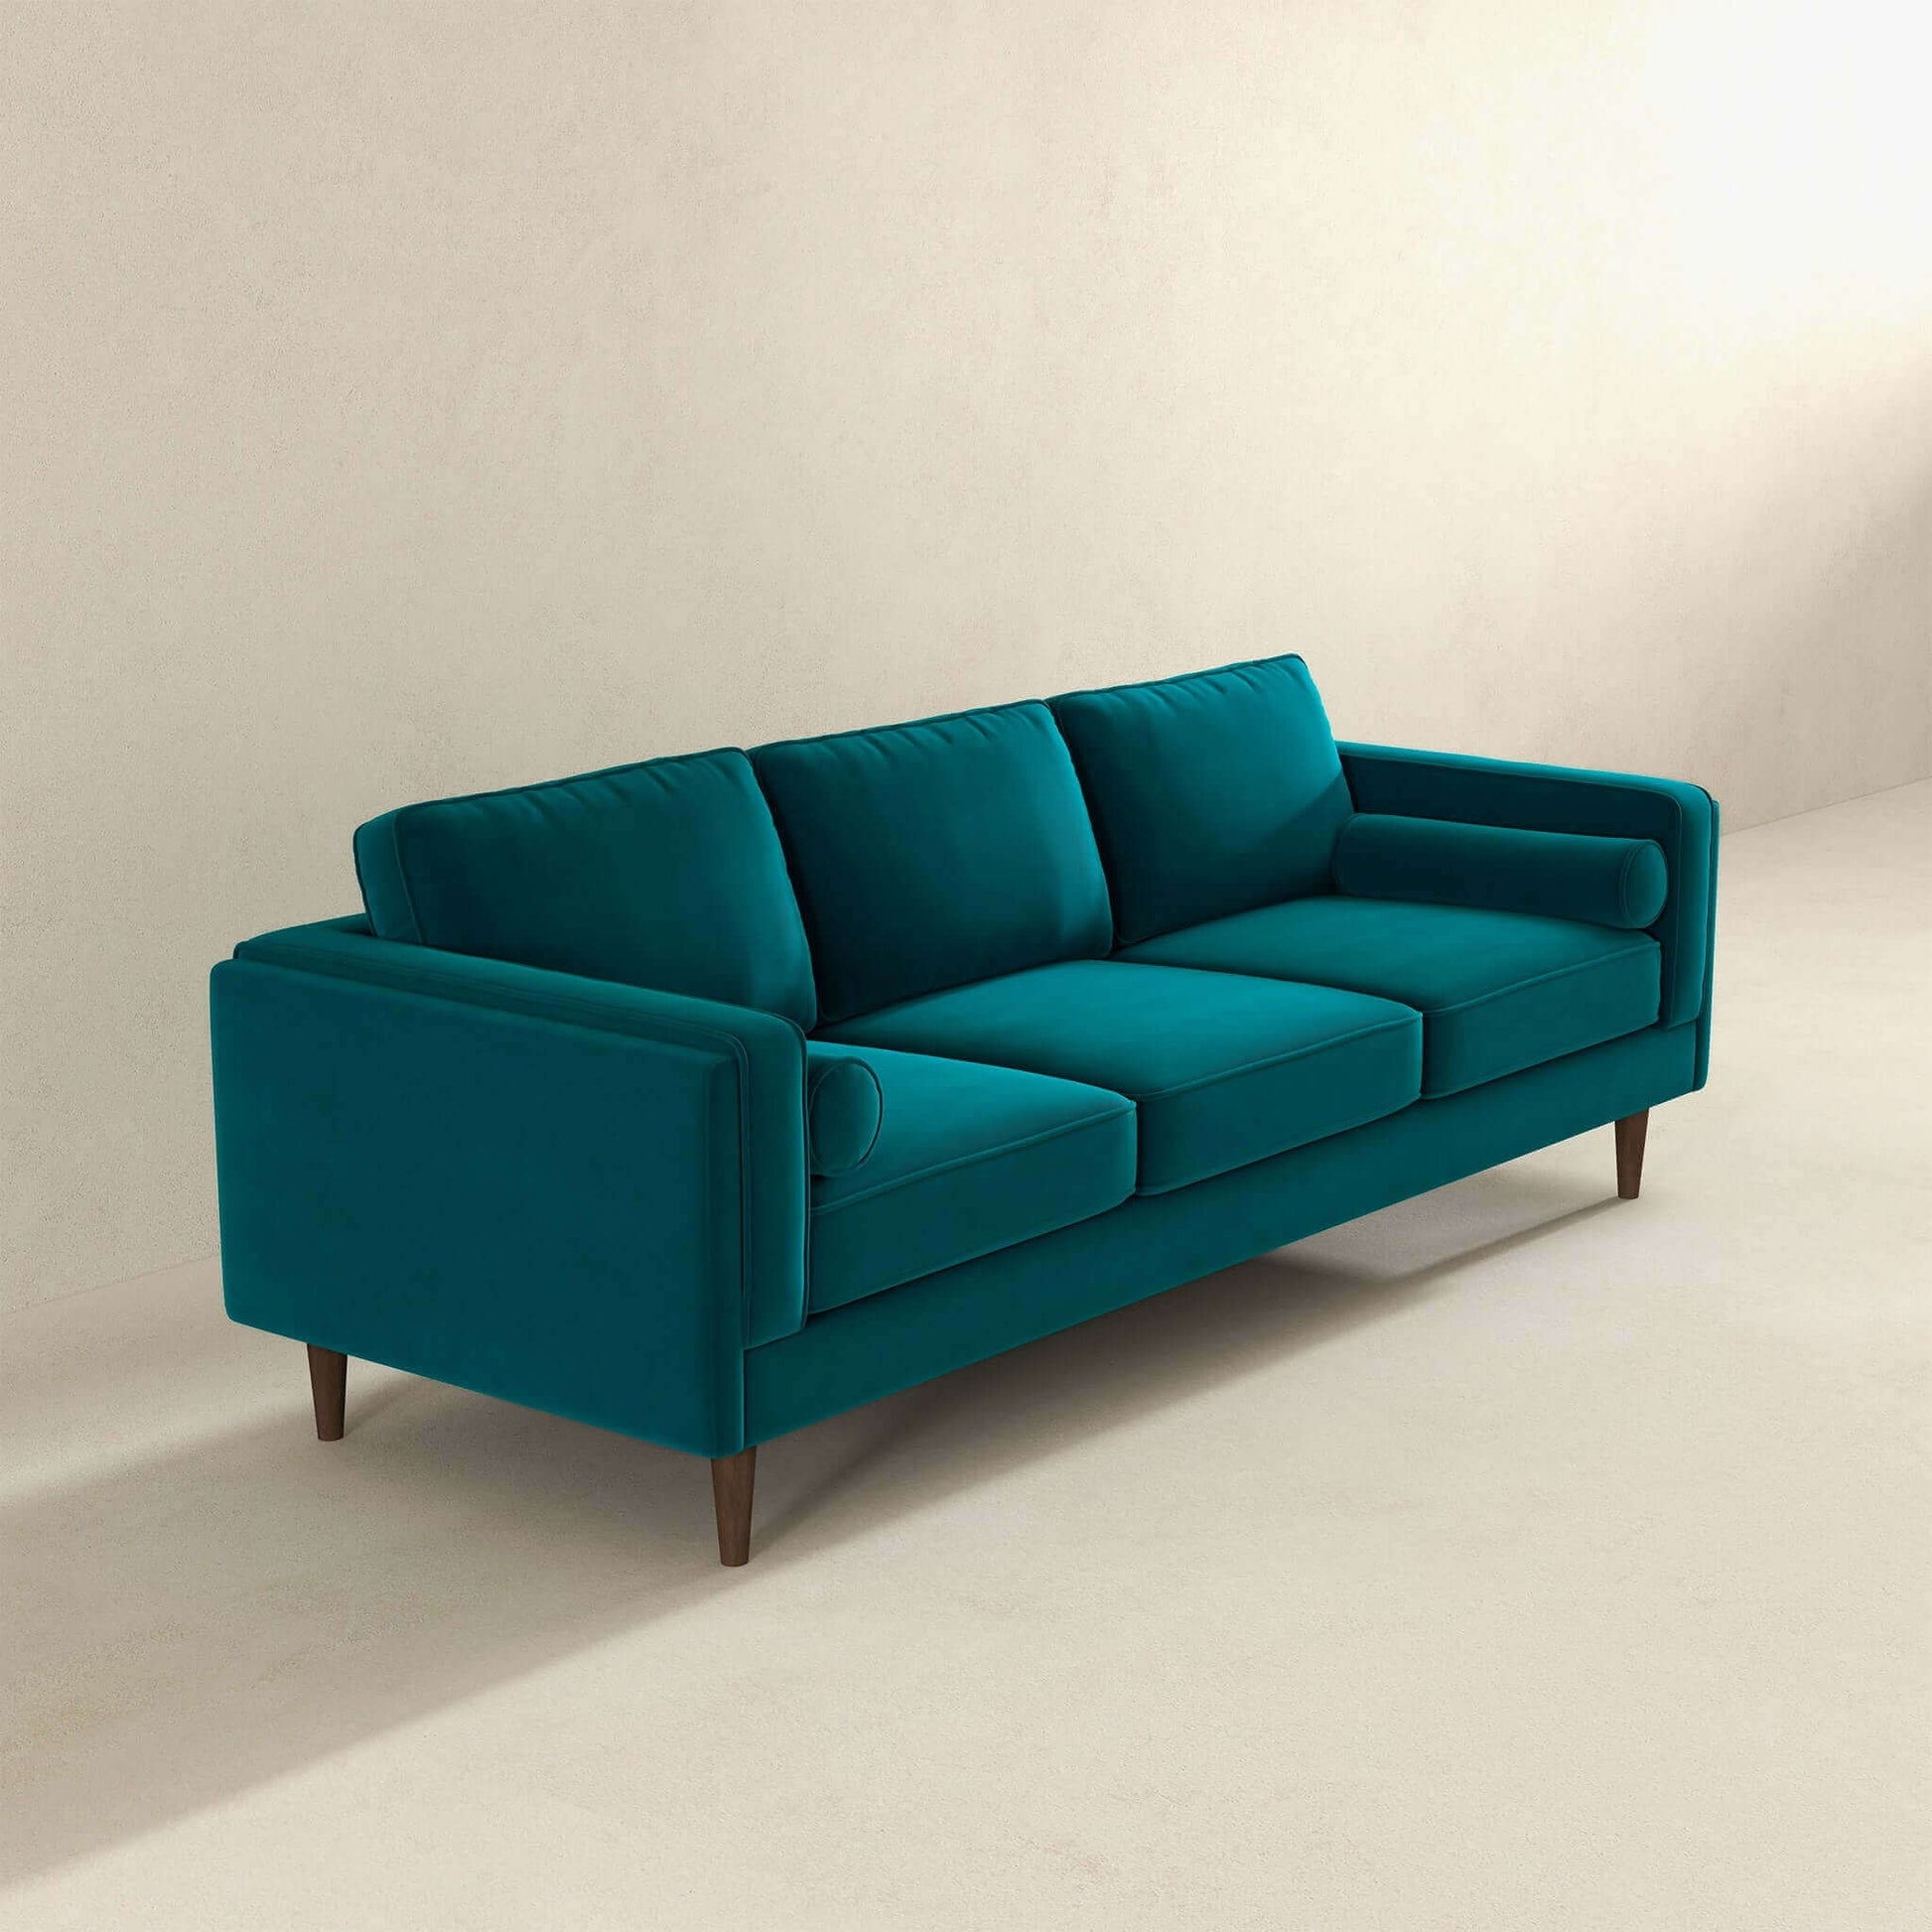 Amber Mid Century Modern Teal Velvet Sofa